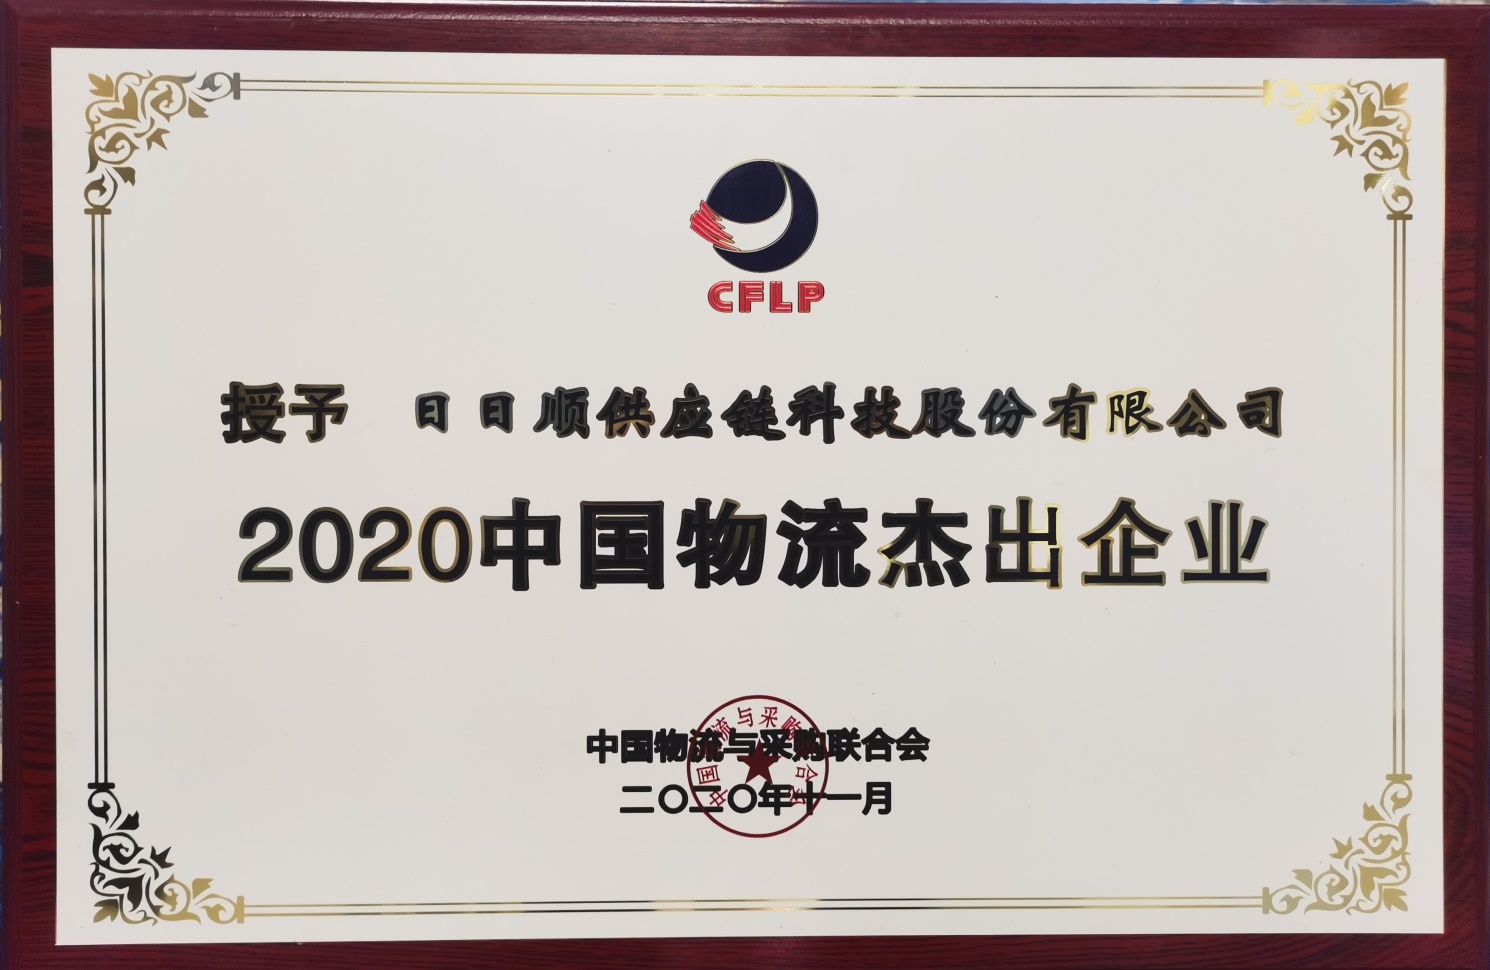 日日顺物流获评“2020中国物流杰出企业”.jpg